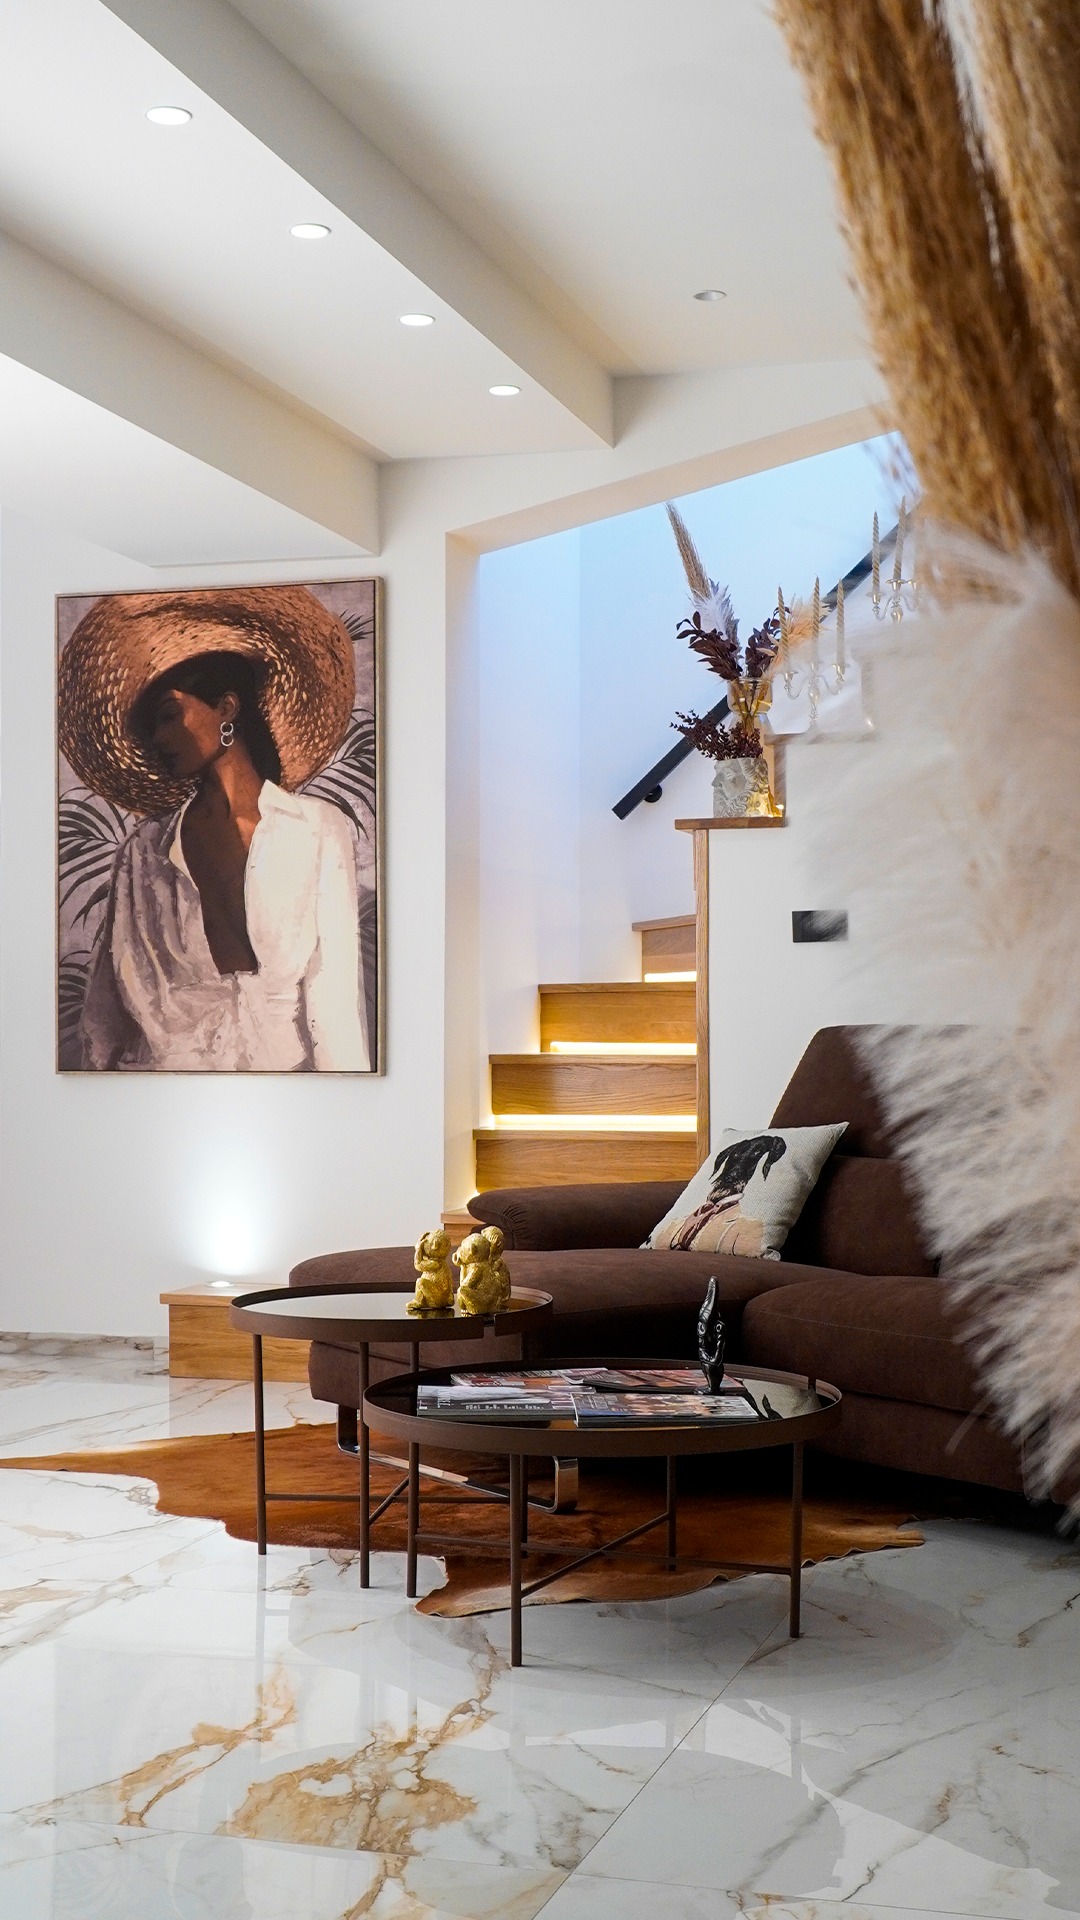 Soluzioni dall'estetica contemporanea.✨

Ottimizza gli spazi di casa tua con un